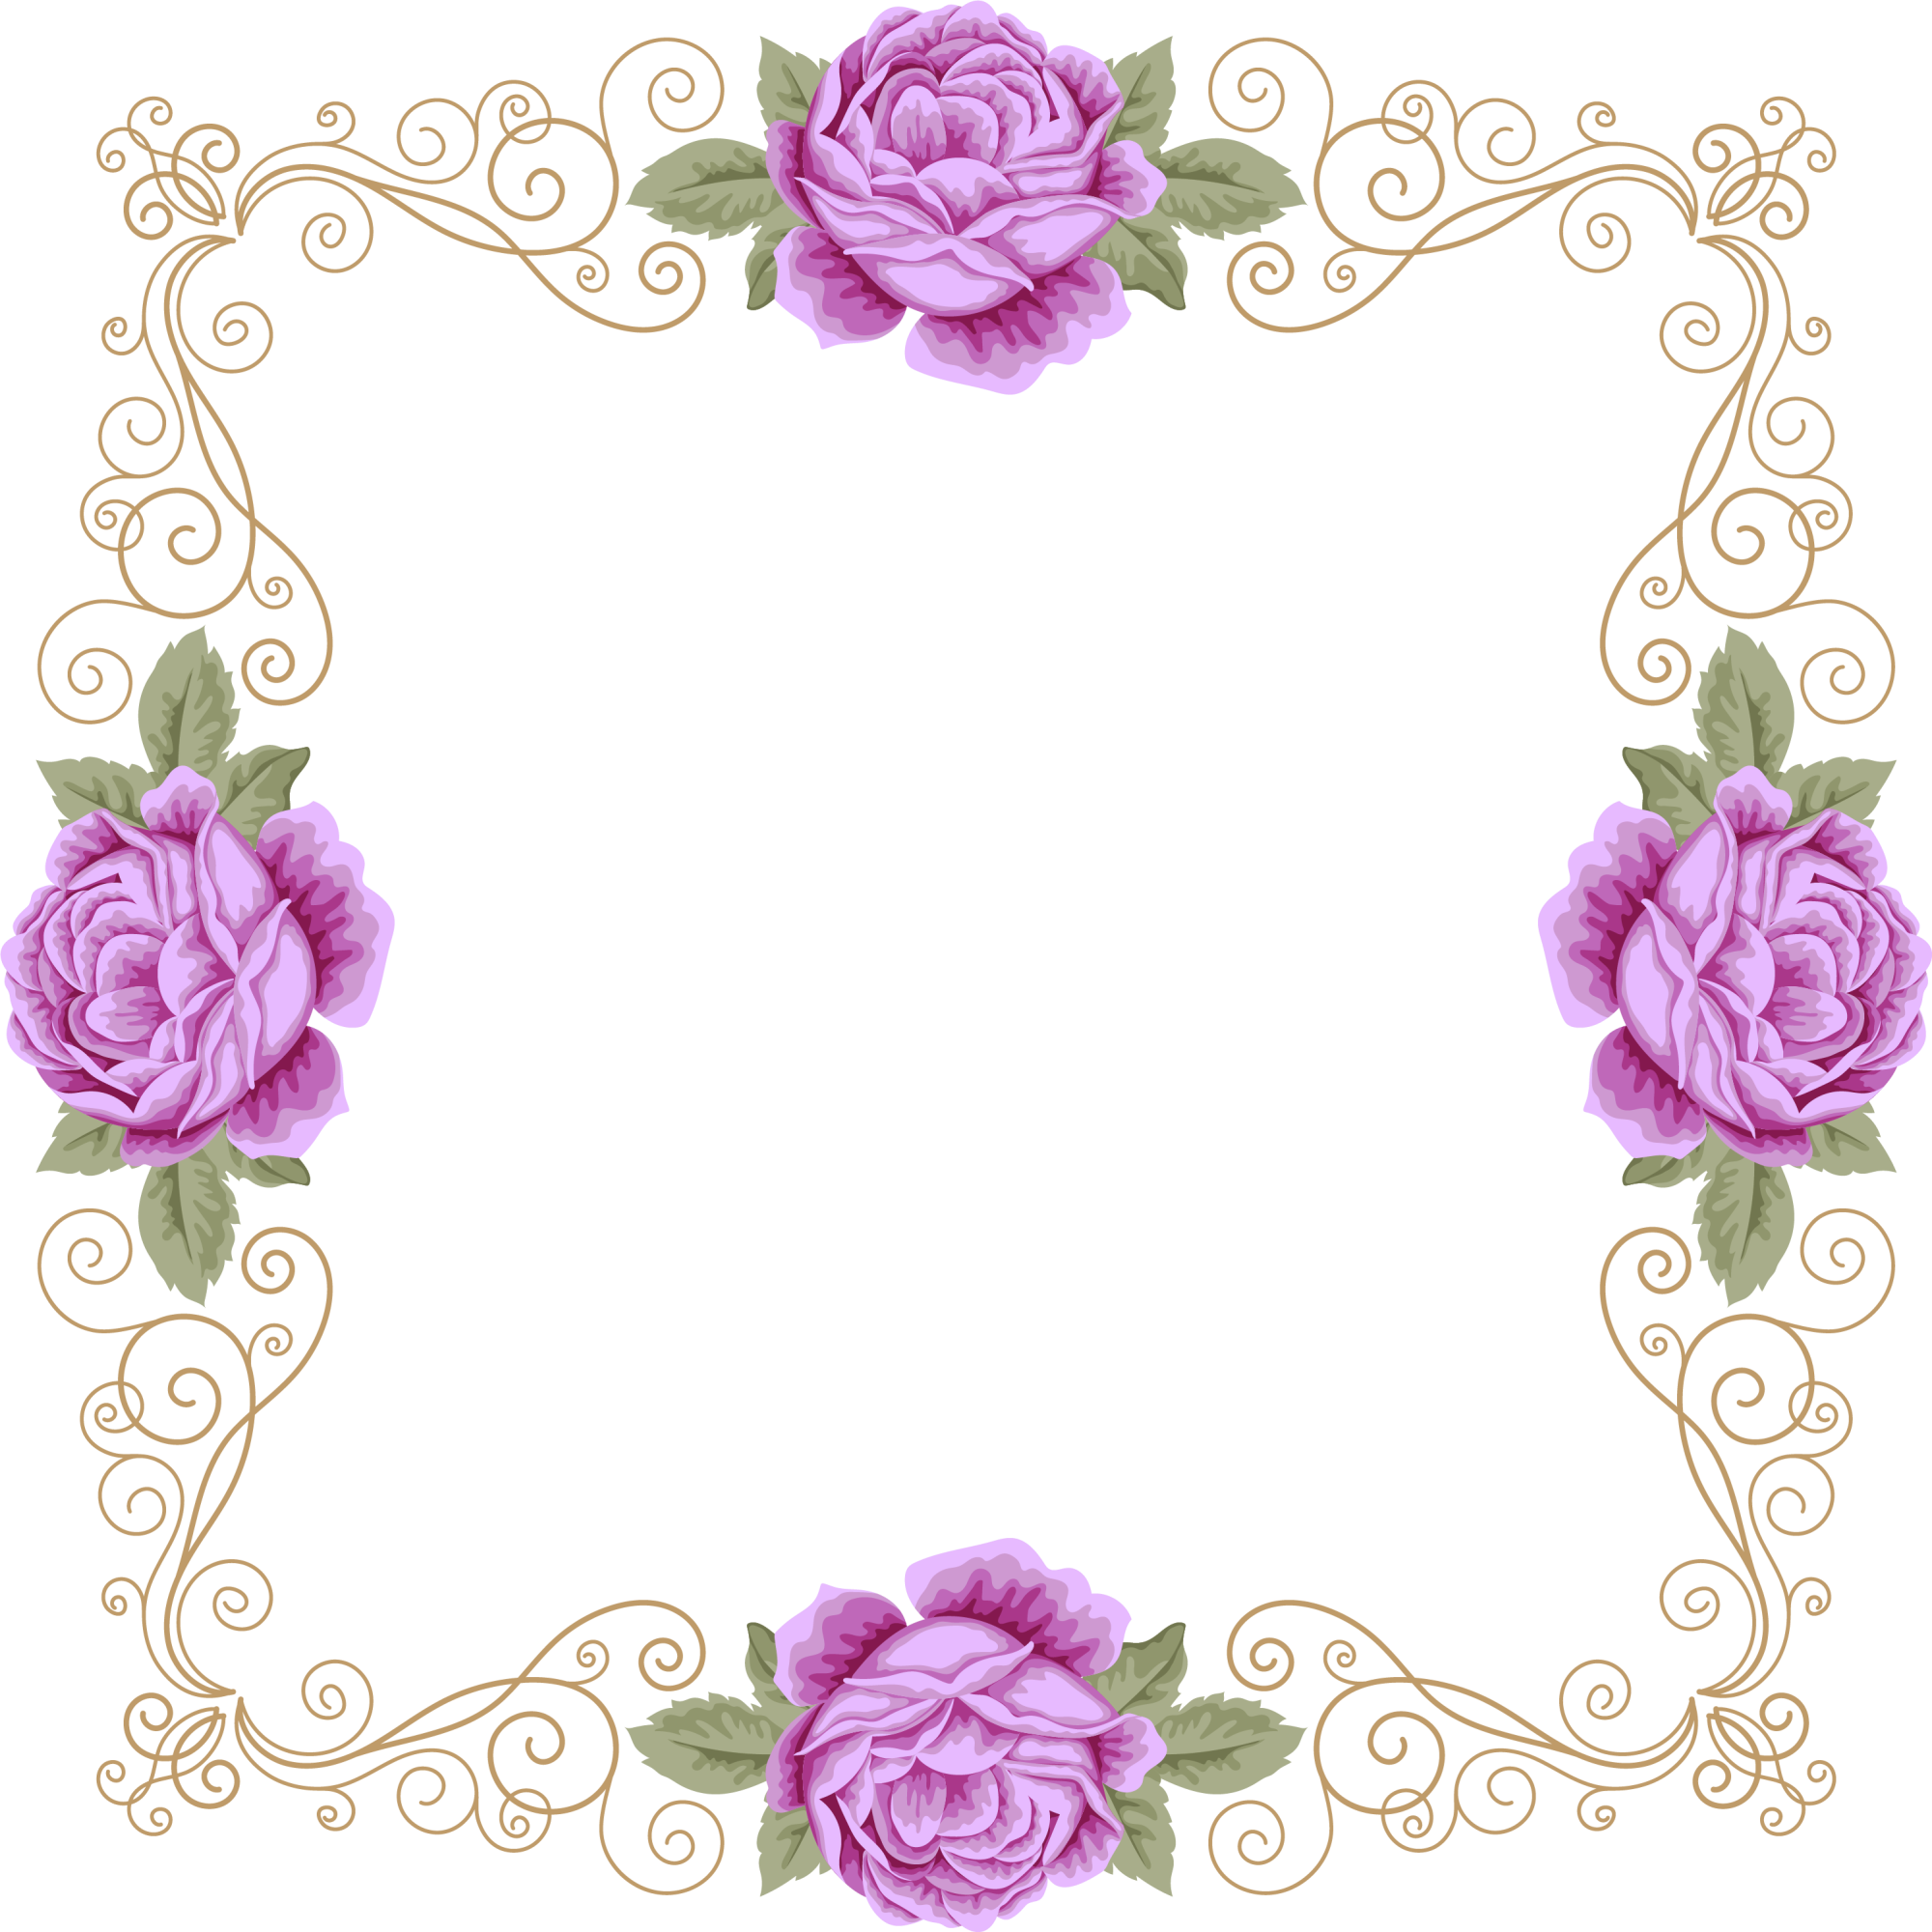 Download Flower Garden Purple Frame Violet Roses Invitation HQ PNG Image |  FreePNGImg